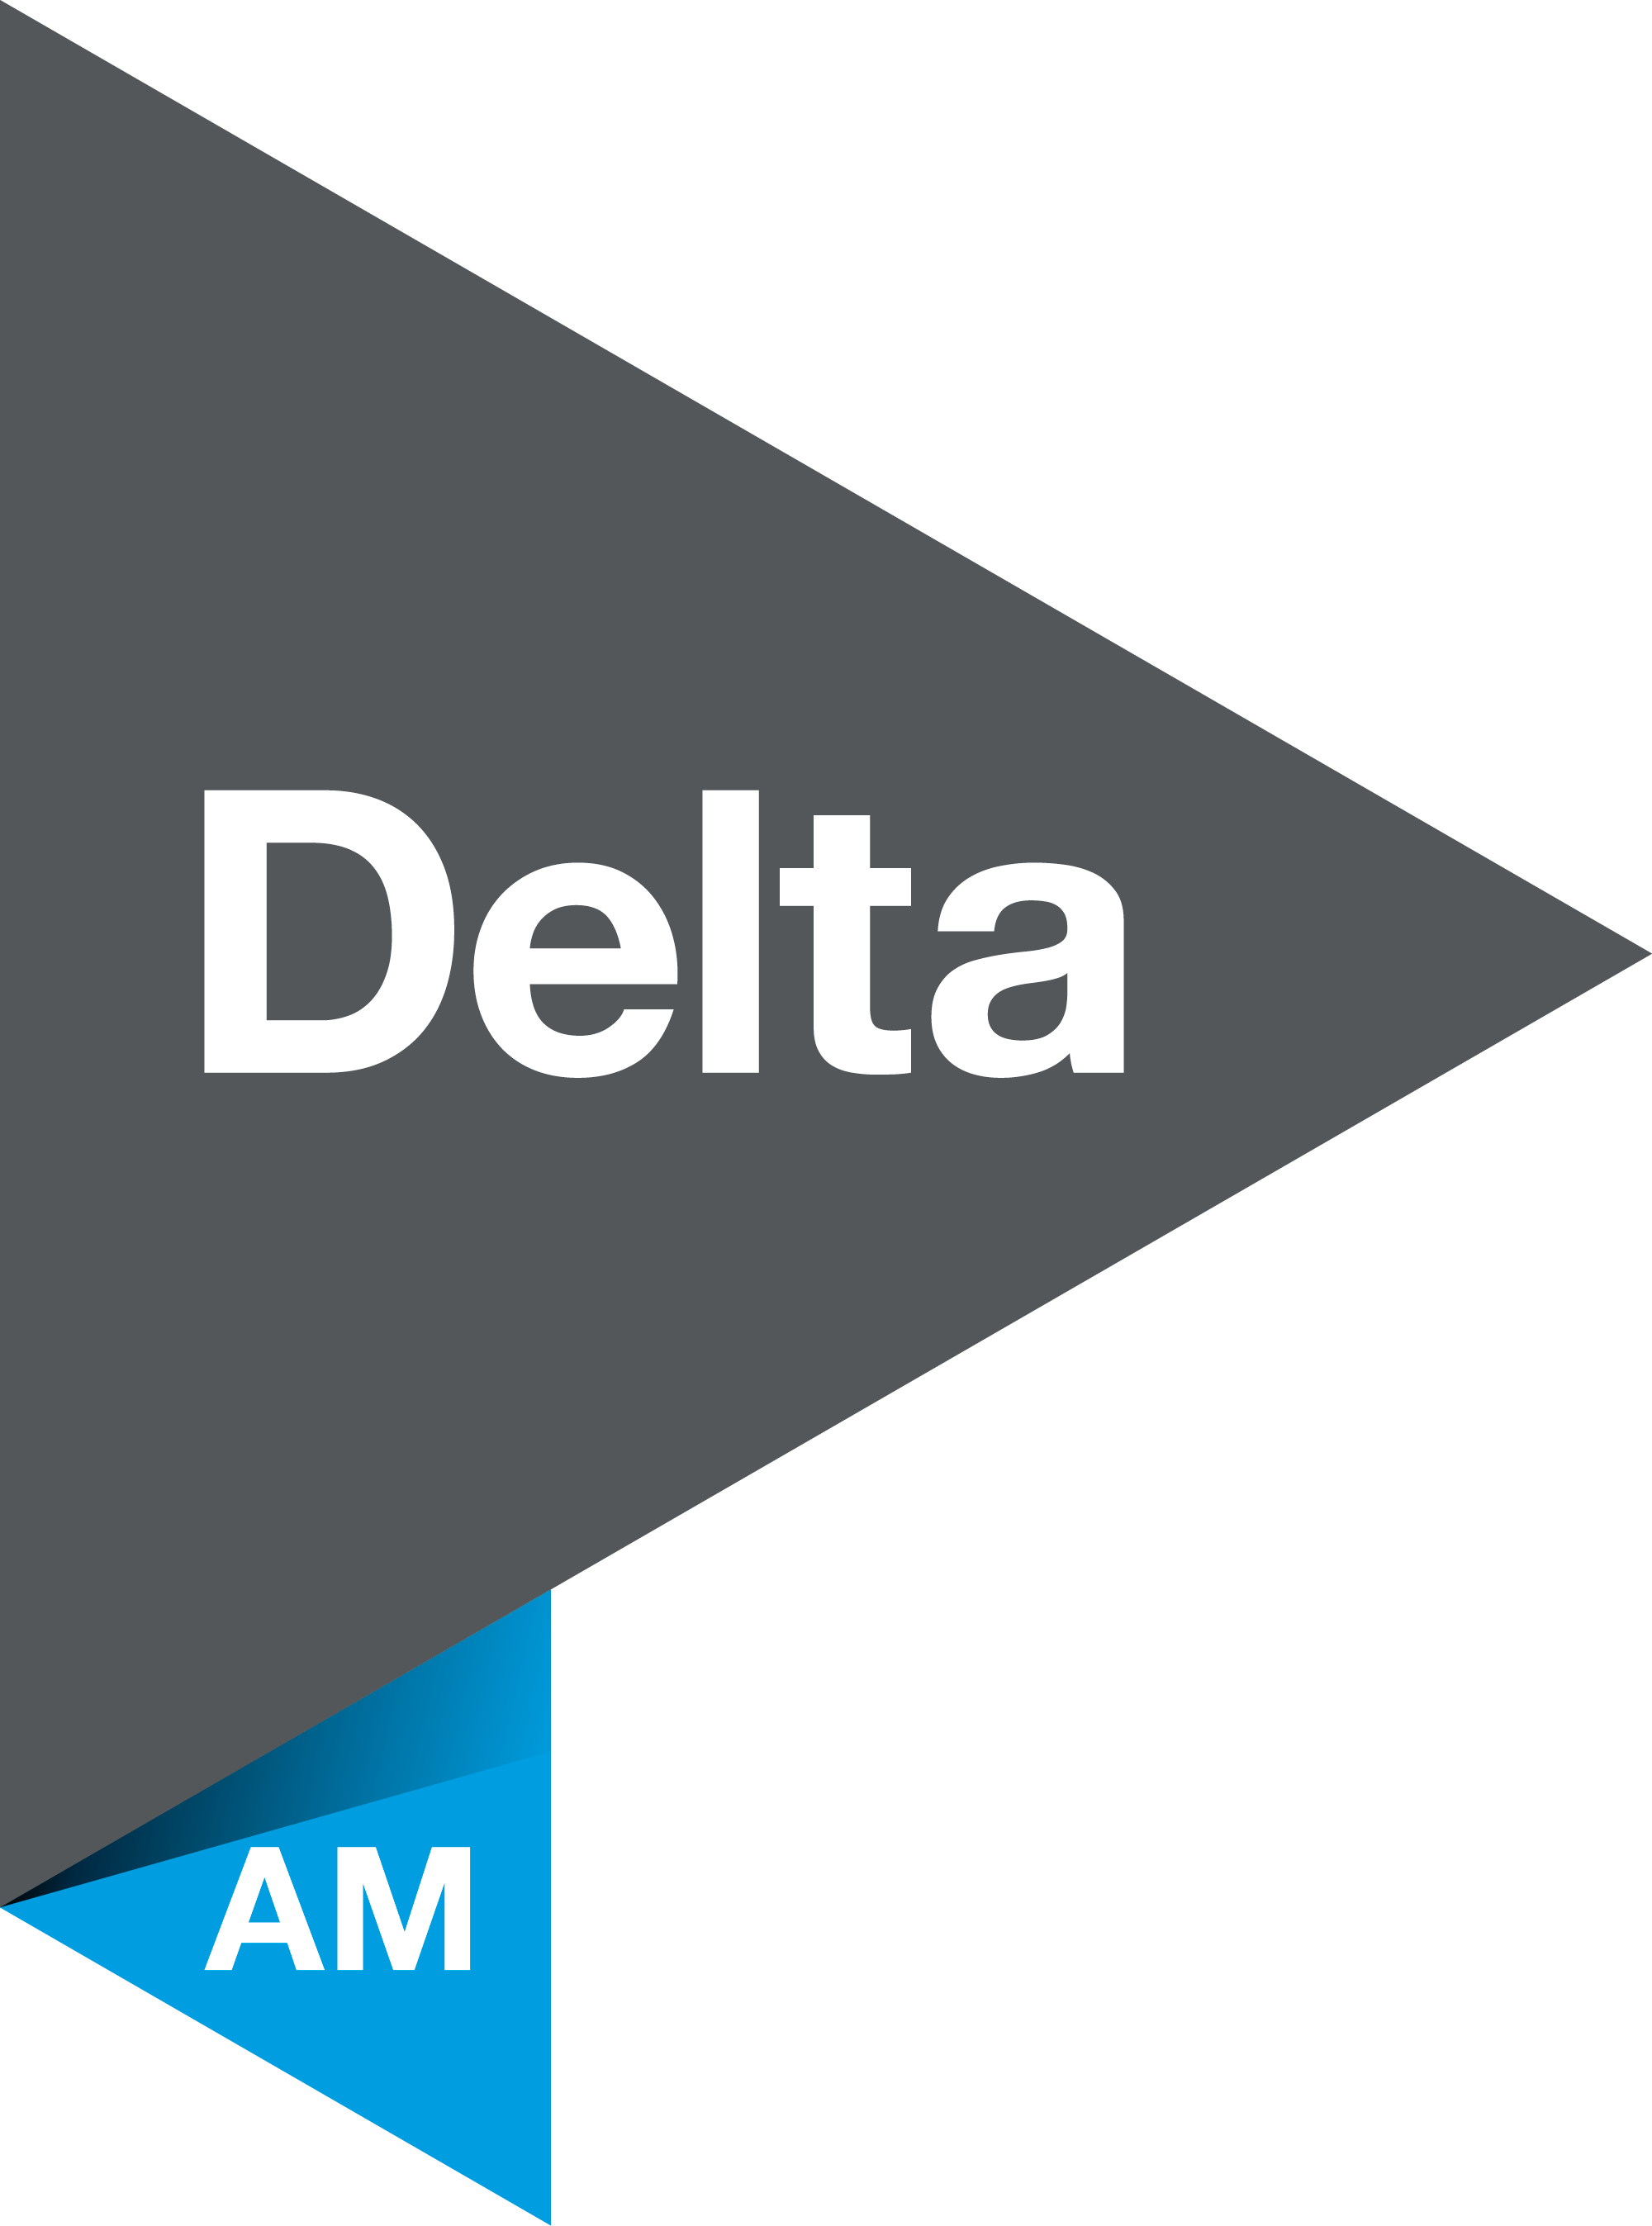 Delta AM